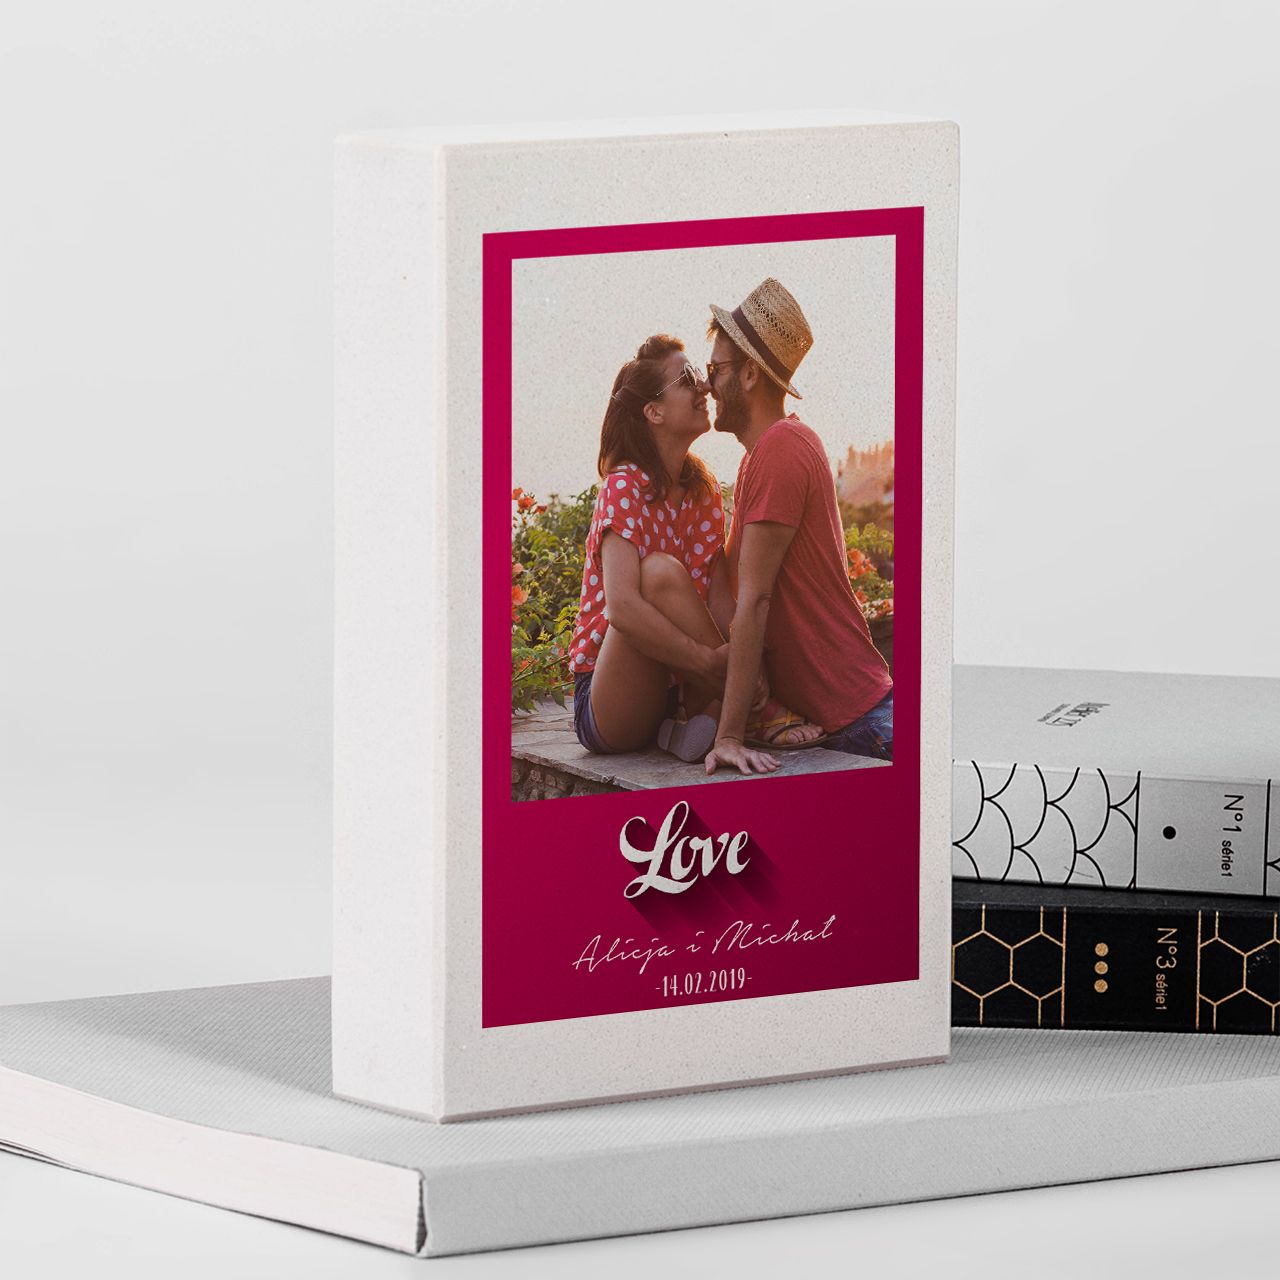 Podpórka pod książki FOTO GRANIT prezent dla pary na rocznicę ślubu